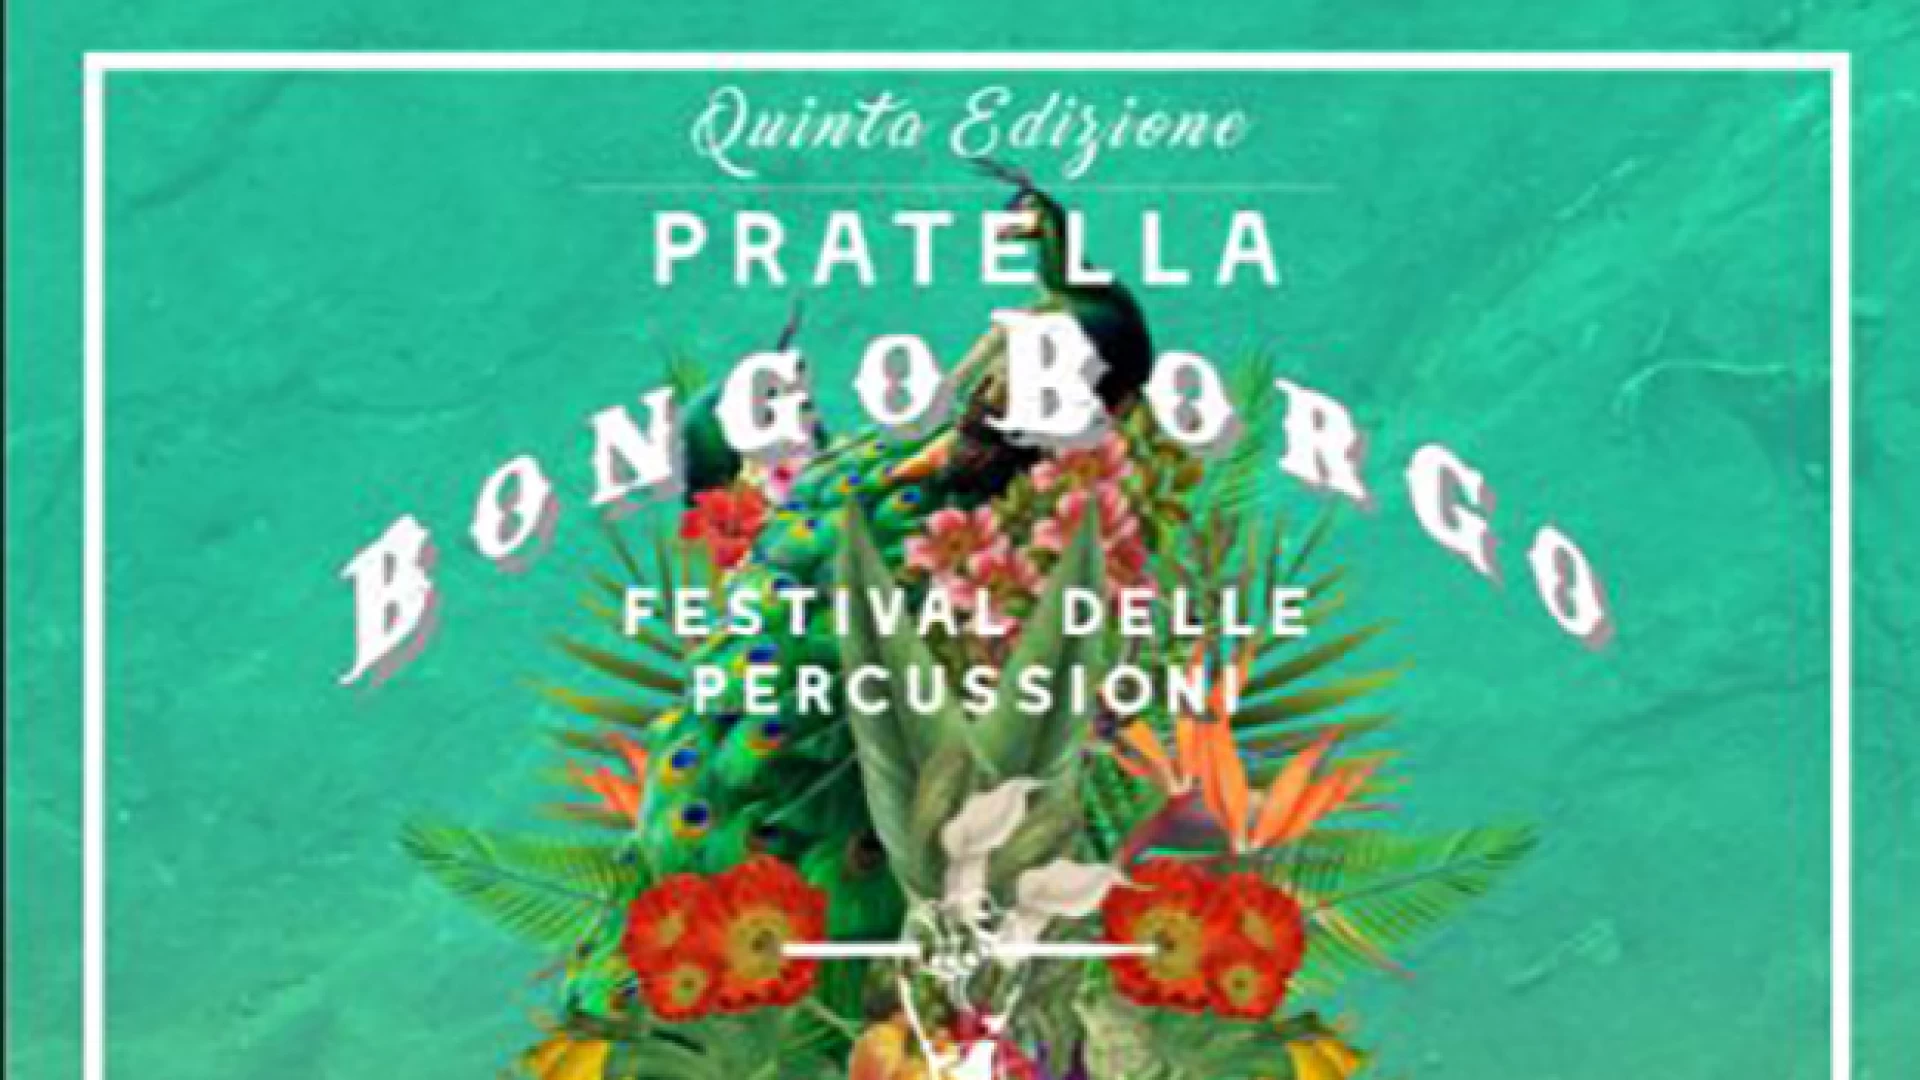 Bongo-Borgo, L’unico festival delle percussioni del sud, a Pratella. Direttamente da “Ballando con le stelle” Maykel Fonts